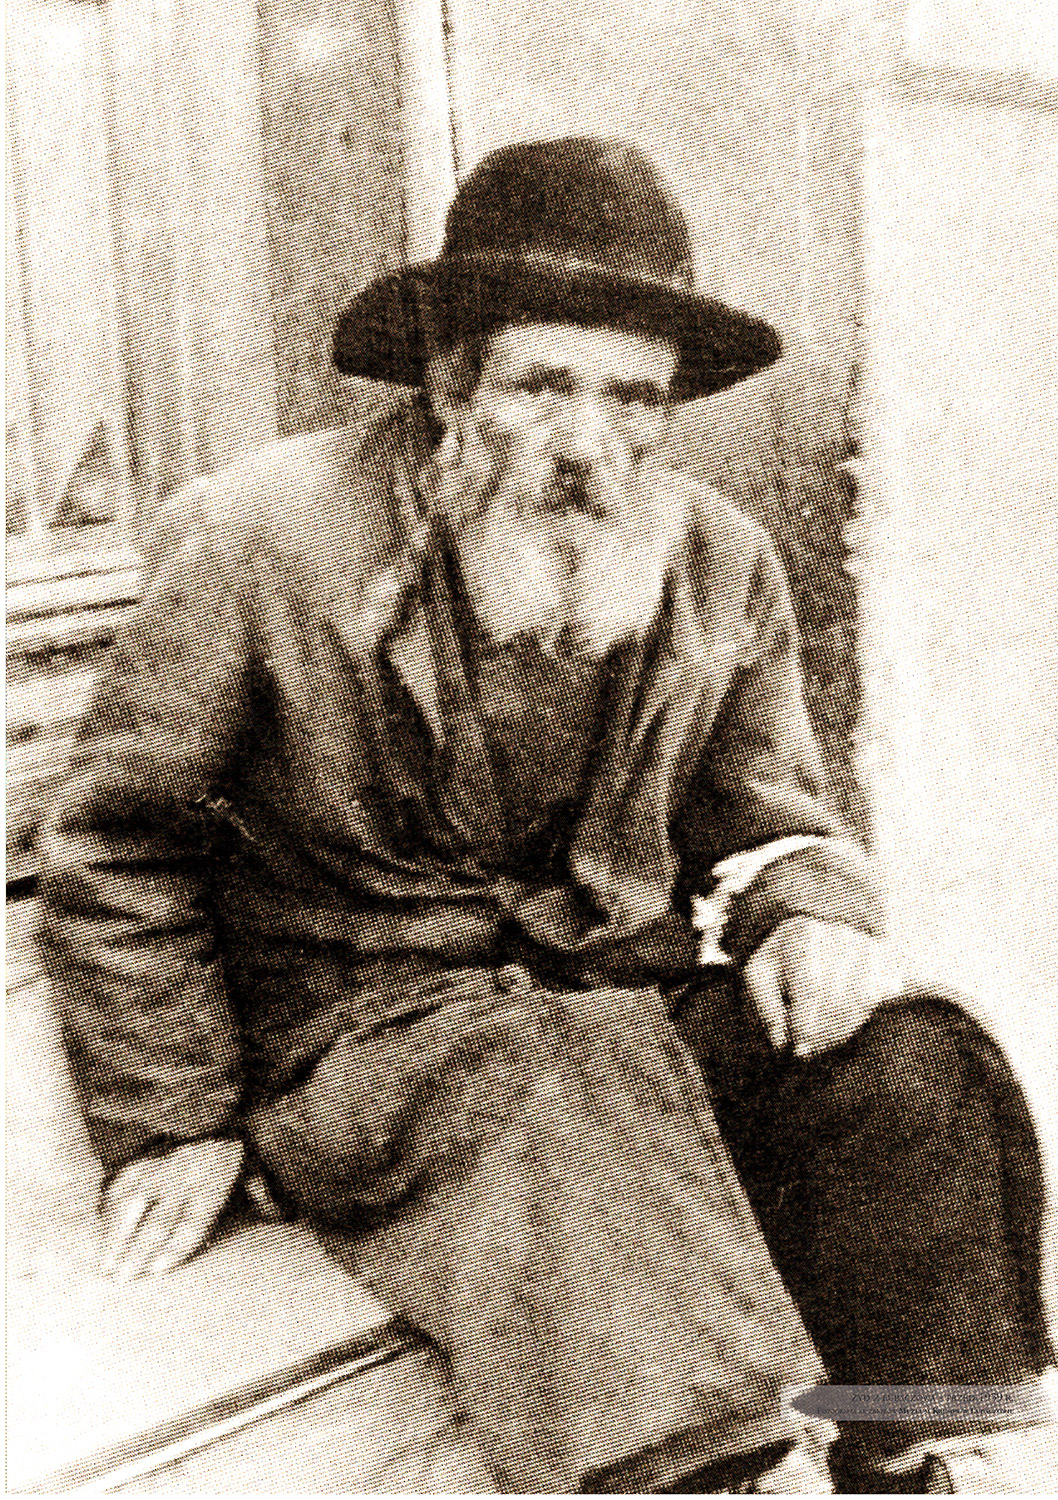 Żyd z Lubaczowa. Przed 1939 r.